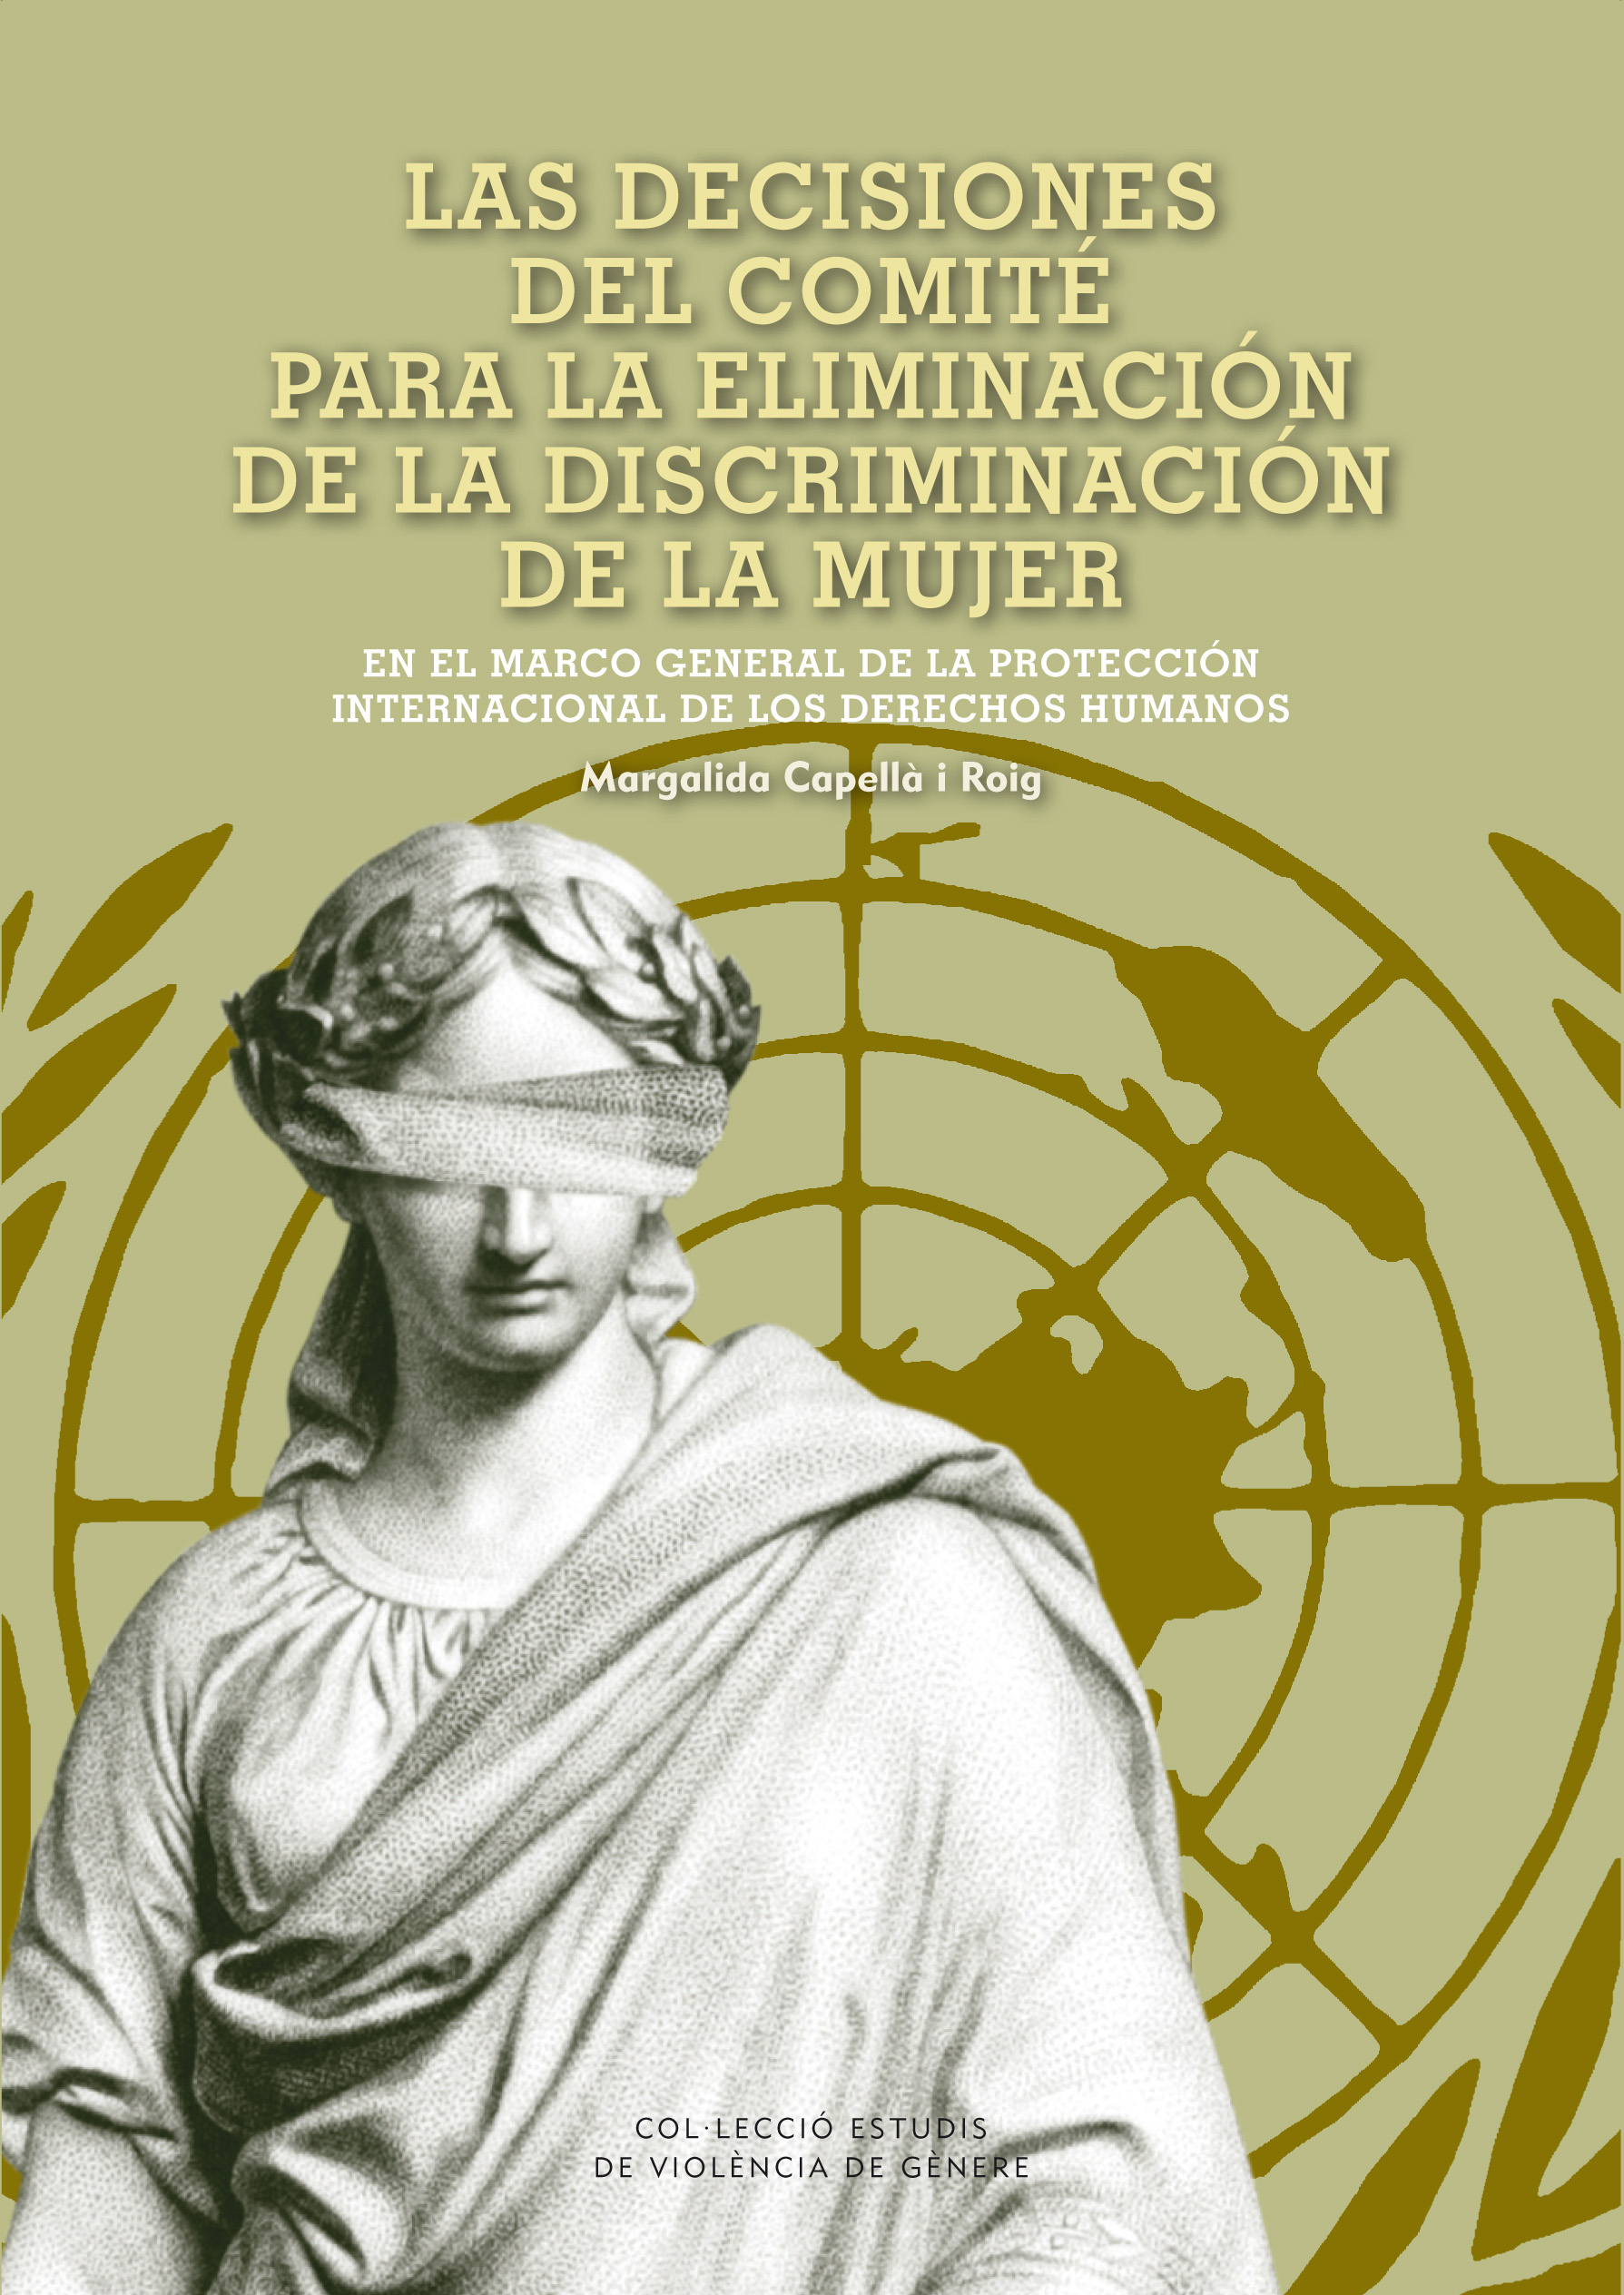 Las decisiones del comitÃ© para la eliminaciÃ³n de la discriminaciÃ³n de la mujer en el marco general de la protecciÃ³n internacional de los derechos humanos